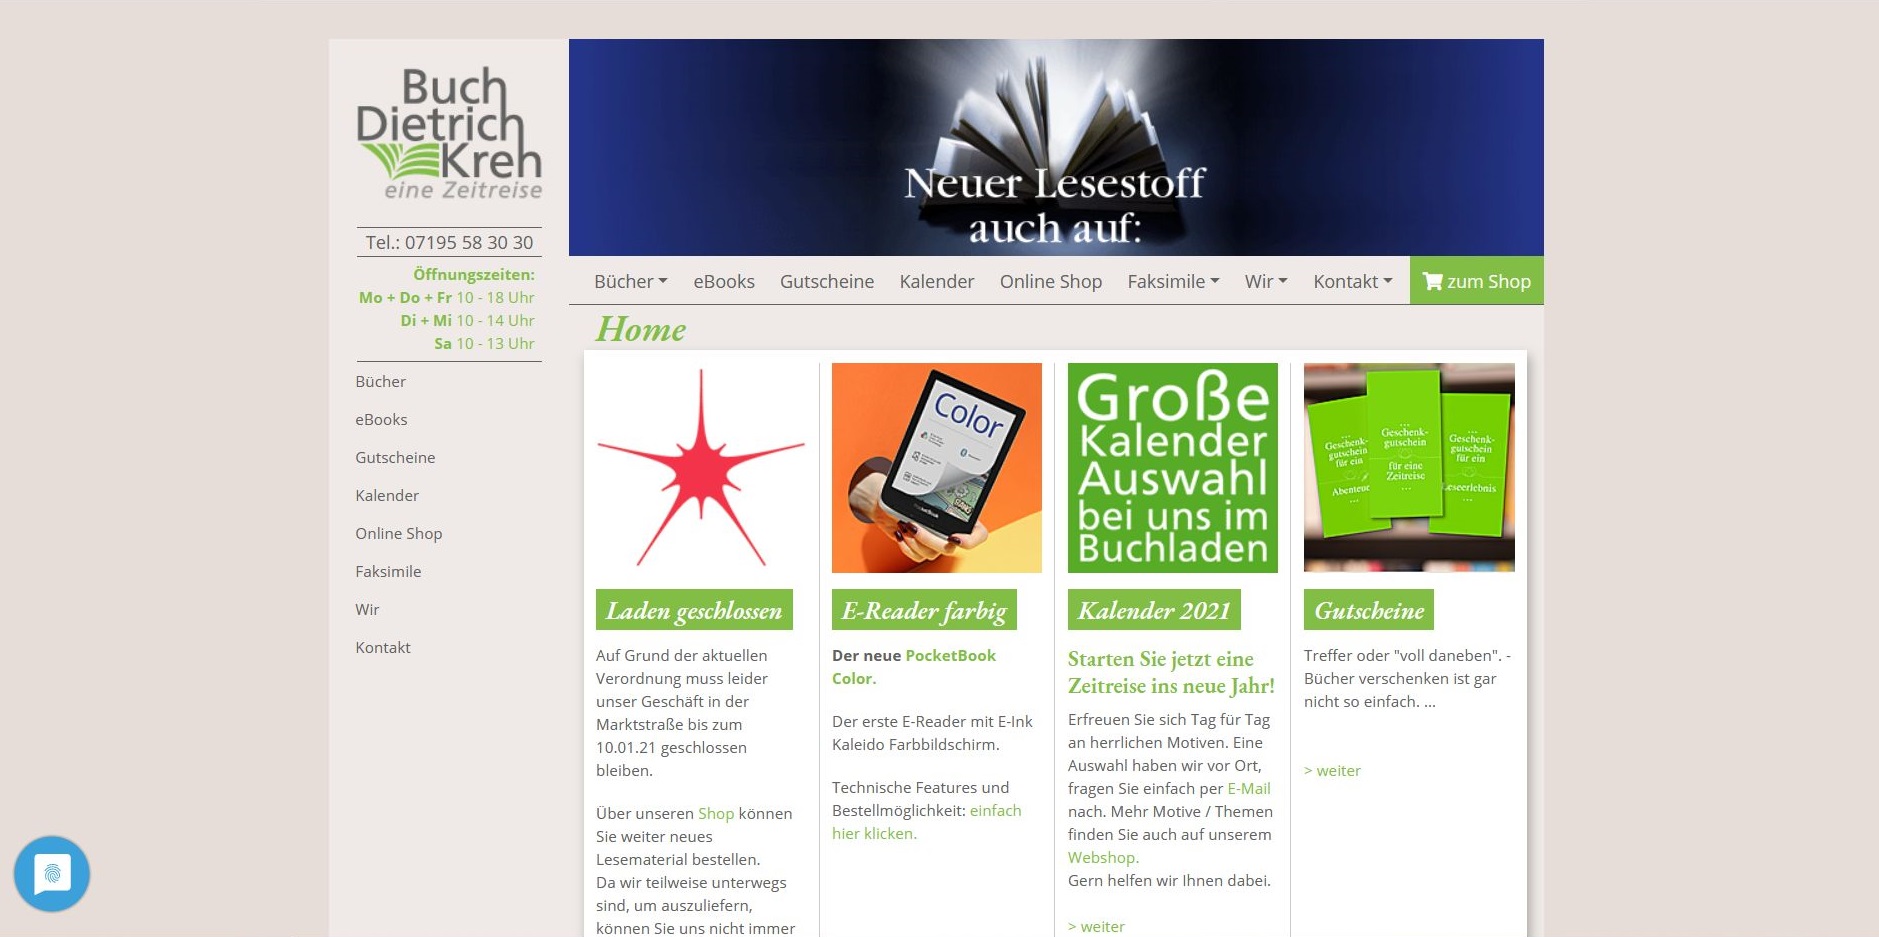 Buch Kreh Website in TYPO3 CMS - mit Anbindung an Händlershop